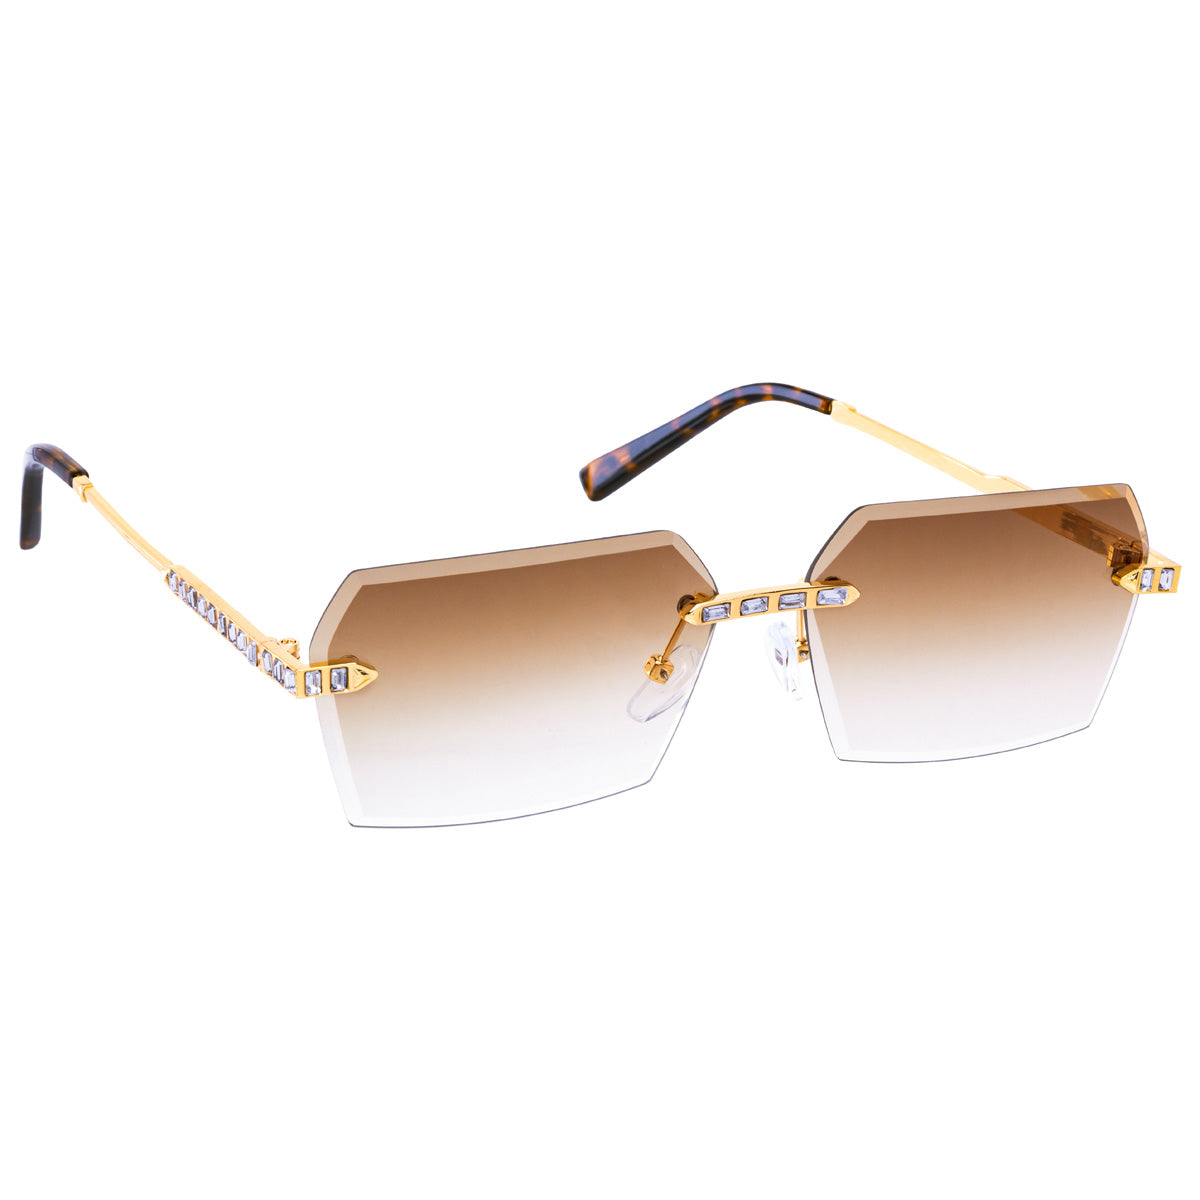 Sparkling rectangular sunglasses with frameless lenses